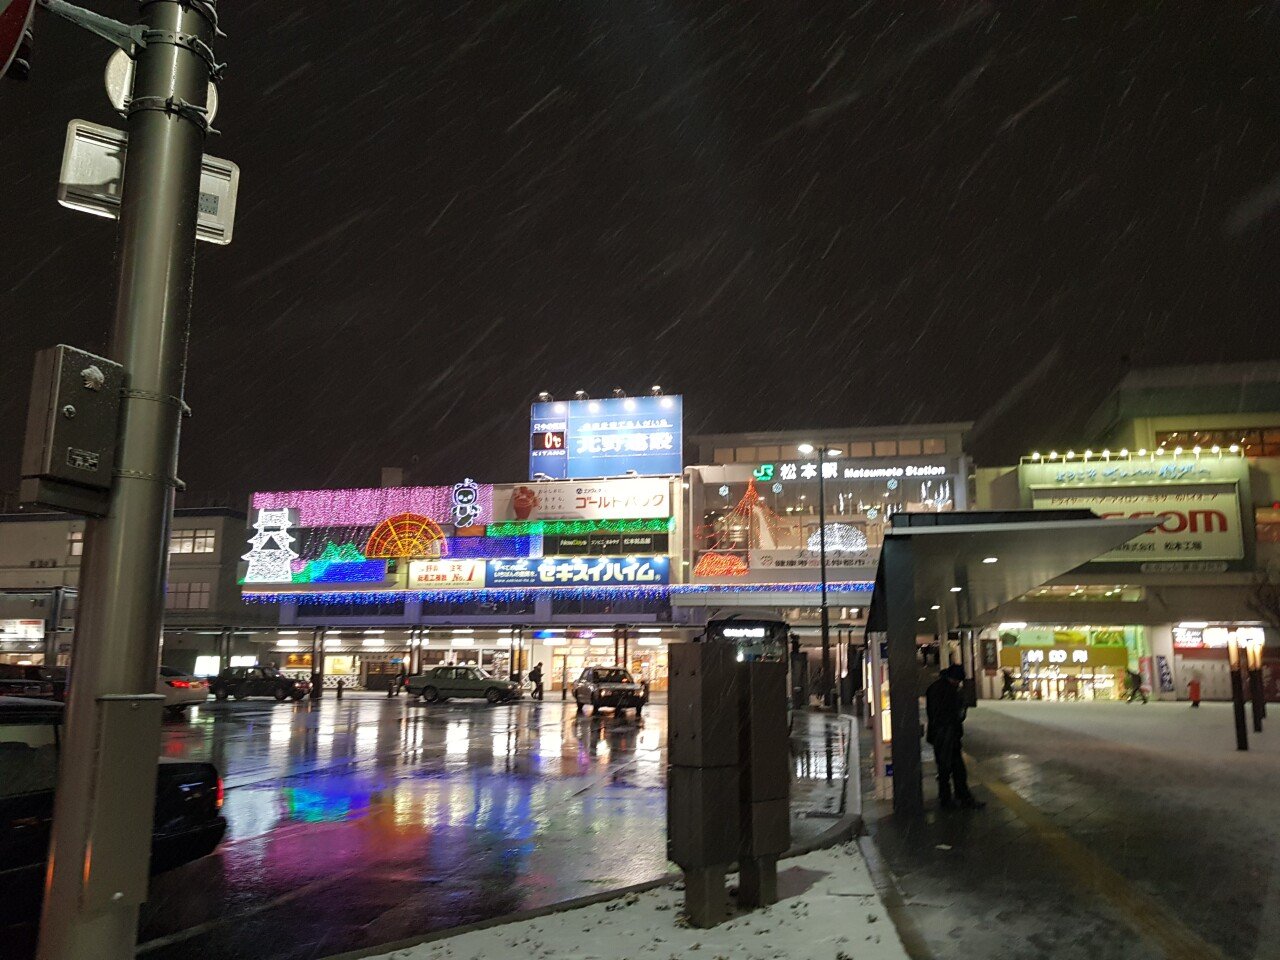 20190131_183855.jpg 눈으로 덮인 겨울 니가타&나가노 여행기(2) (스압?)